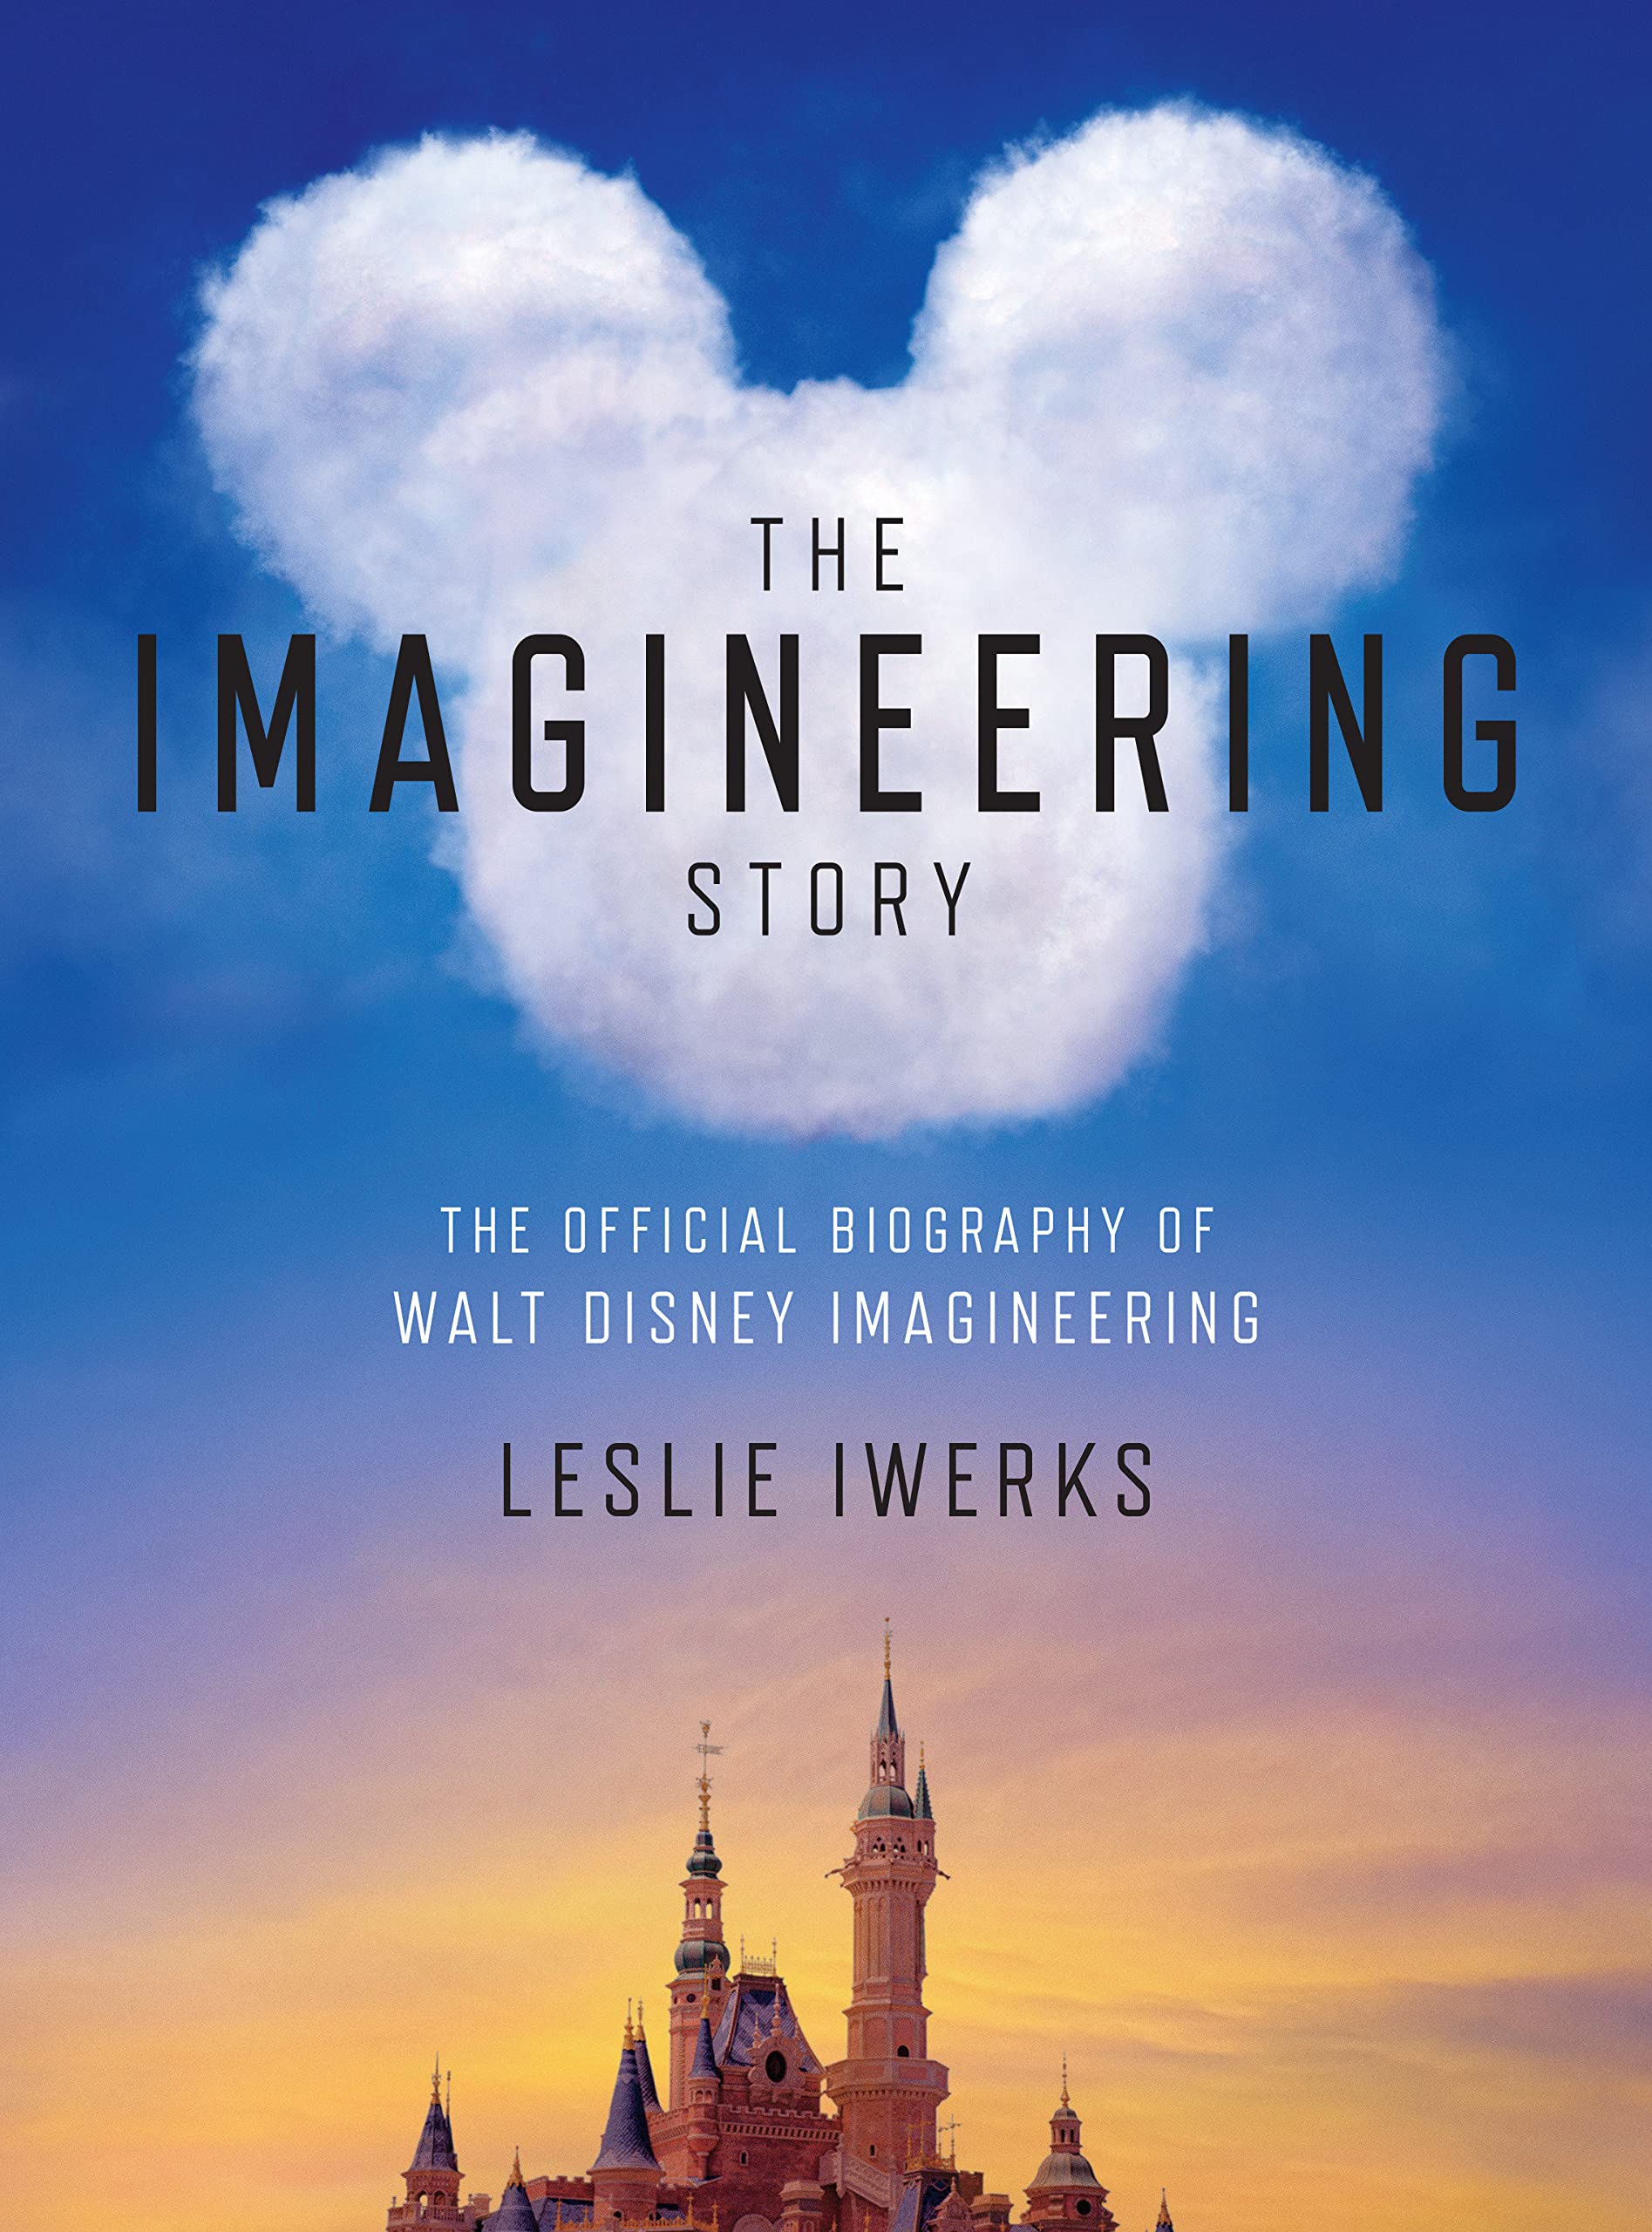 The Imagineering Story: The Official Biography of Walt Disney Imagineering - Leslie Iwerks